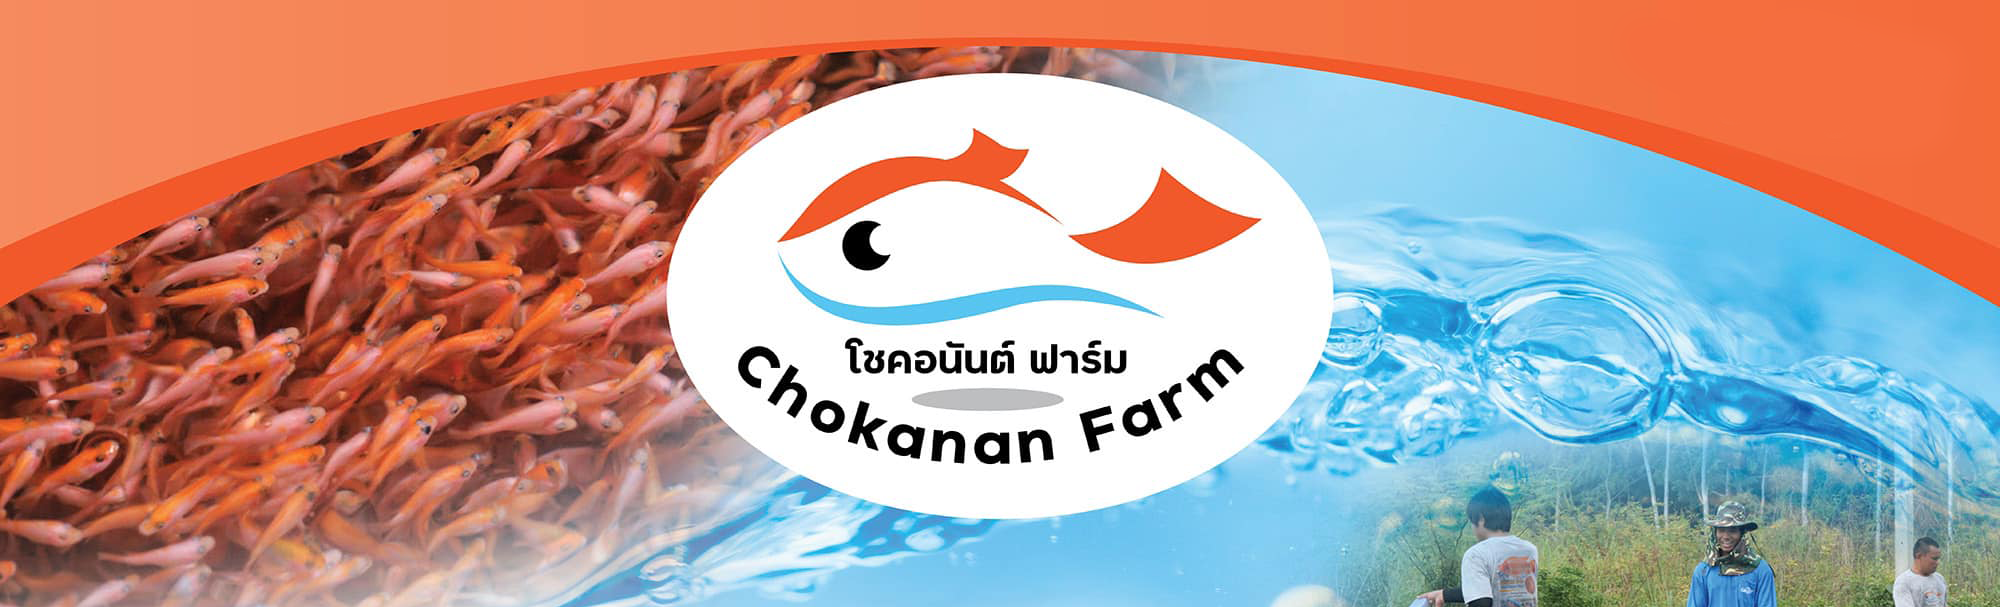 โชคอนันต์ฟาร์ม เชียงราย Logo